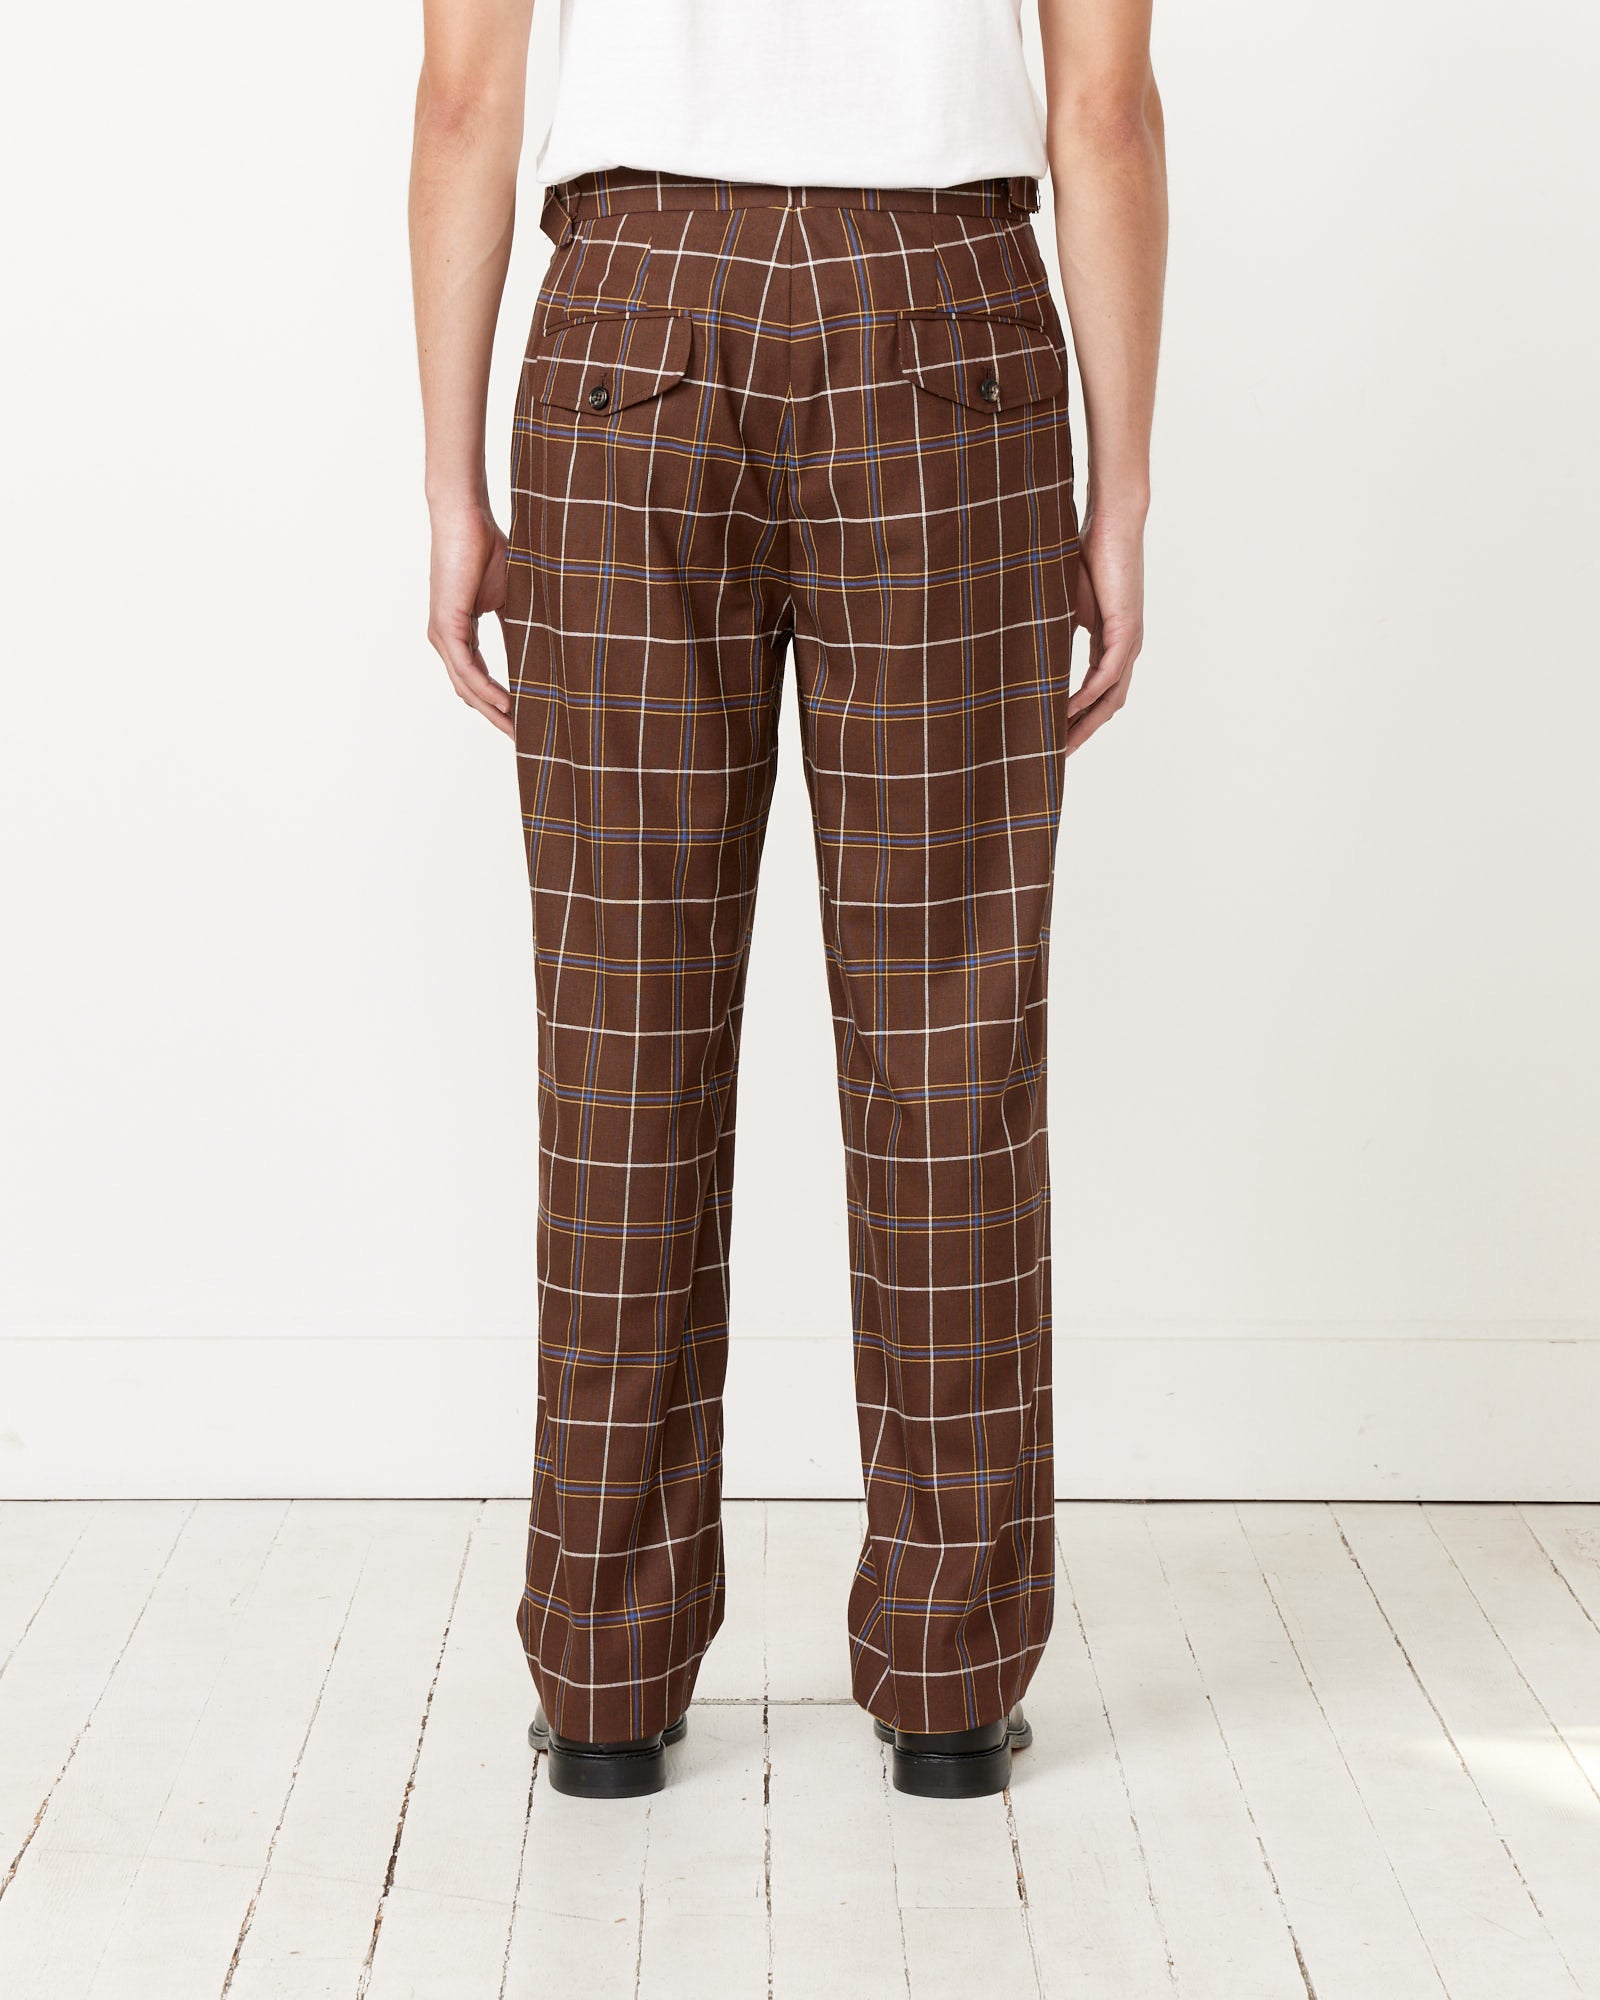 Dunham Plaid Trouser in Brown Multi